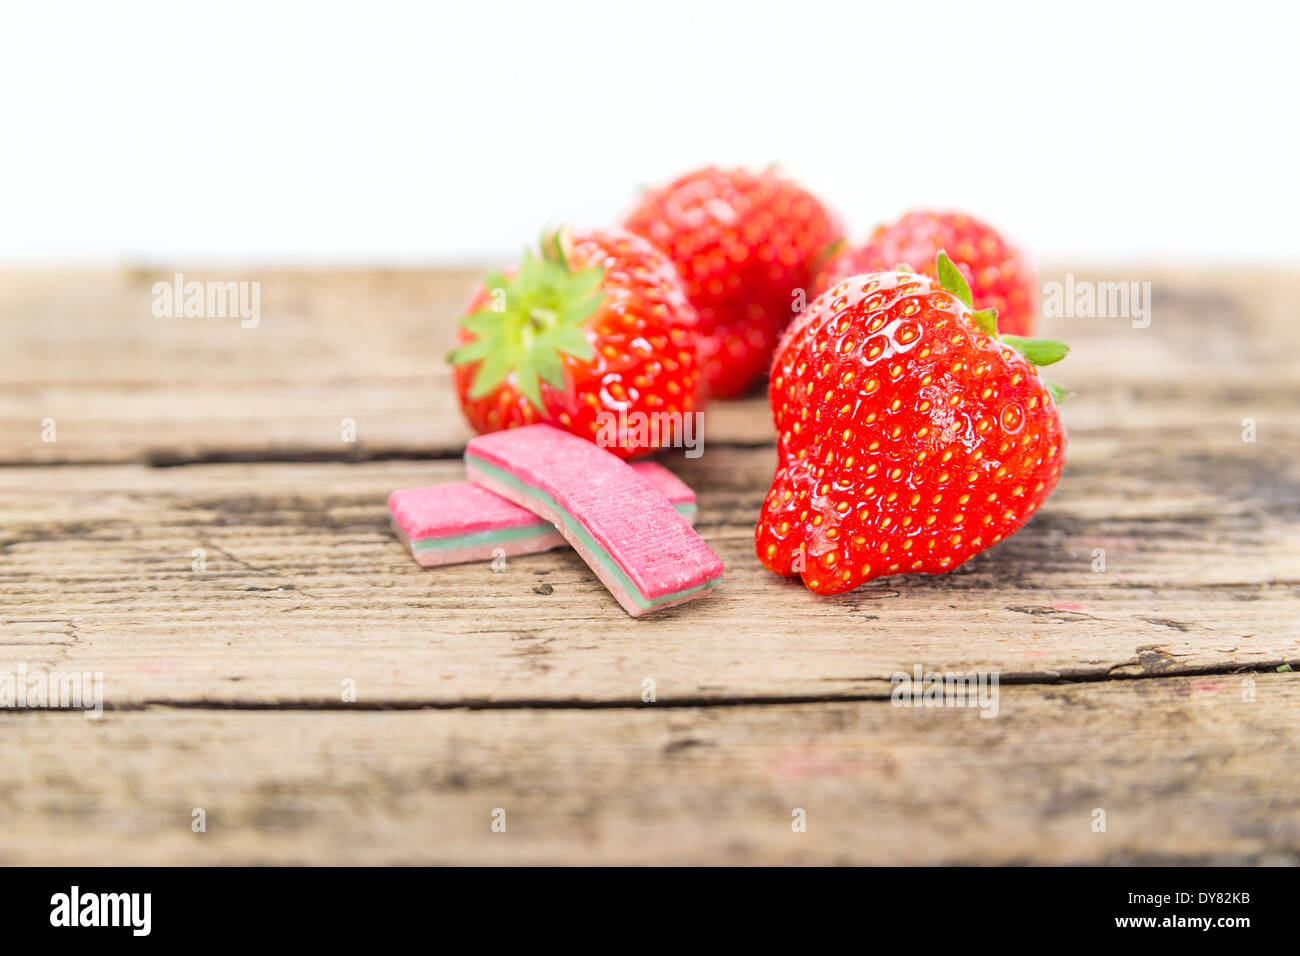 Erdbeere Kaugummi auf einem hölzernen Hintergrund Stockfoto